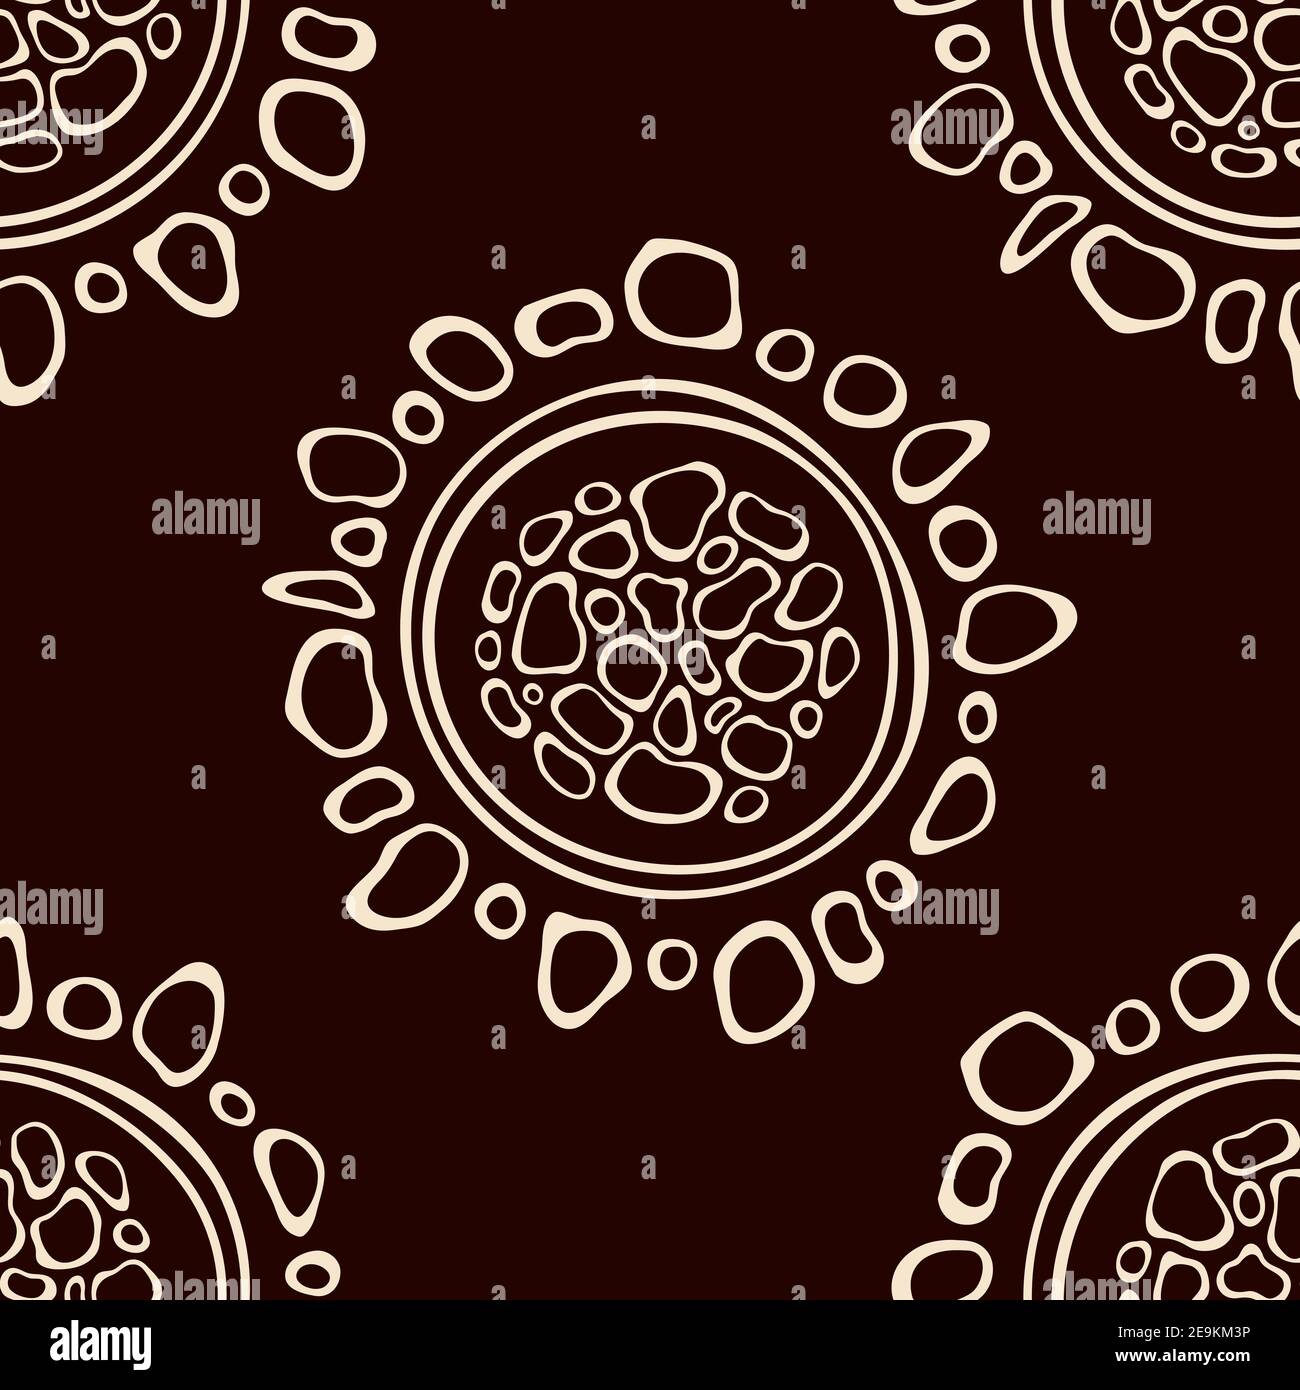 Motif aborigène australien sans couture avec cercles, rayures tortravers, isolé sur fond marron. Une texture élégante sans fin. Texture ethnique. Vecteur. Illustration de Vecteur